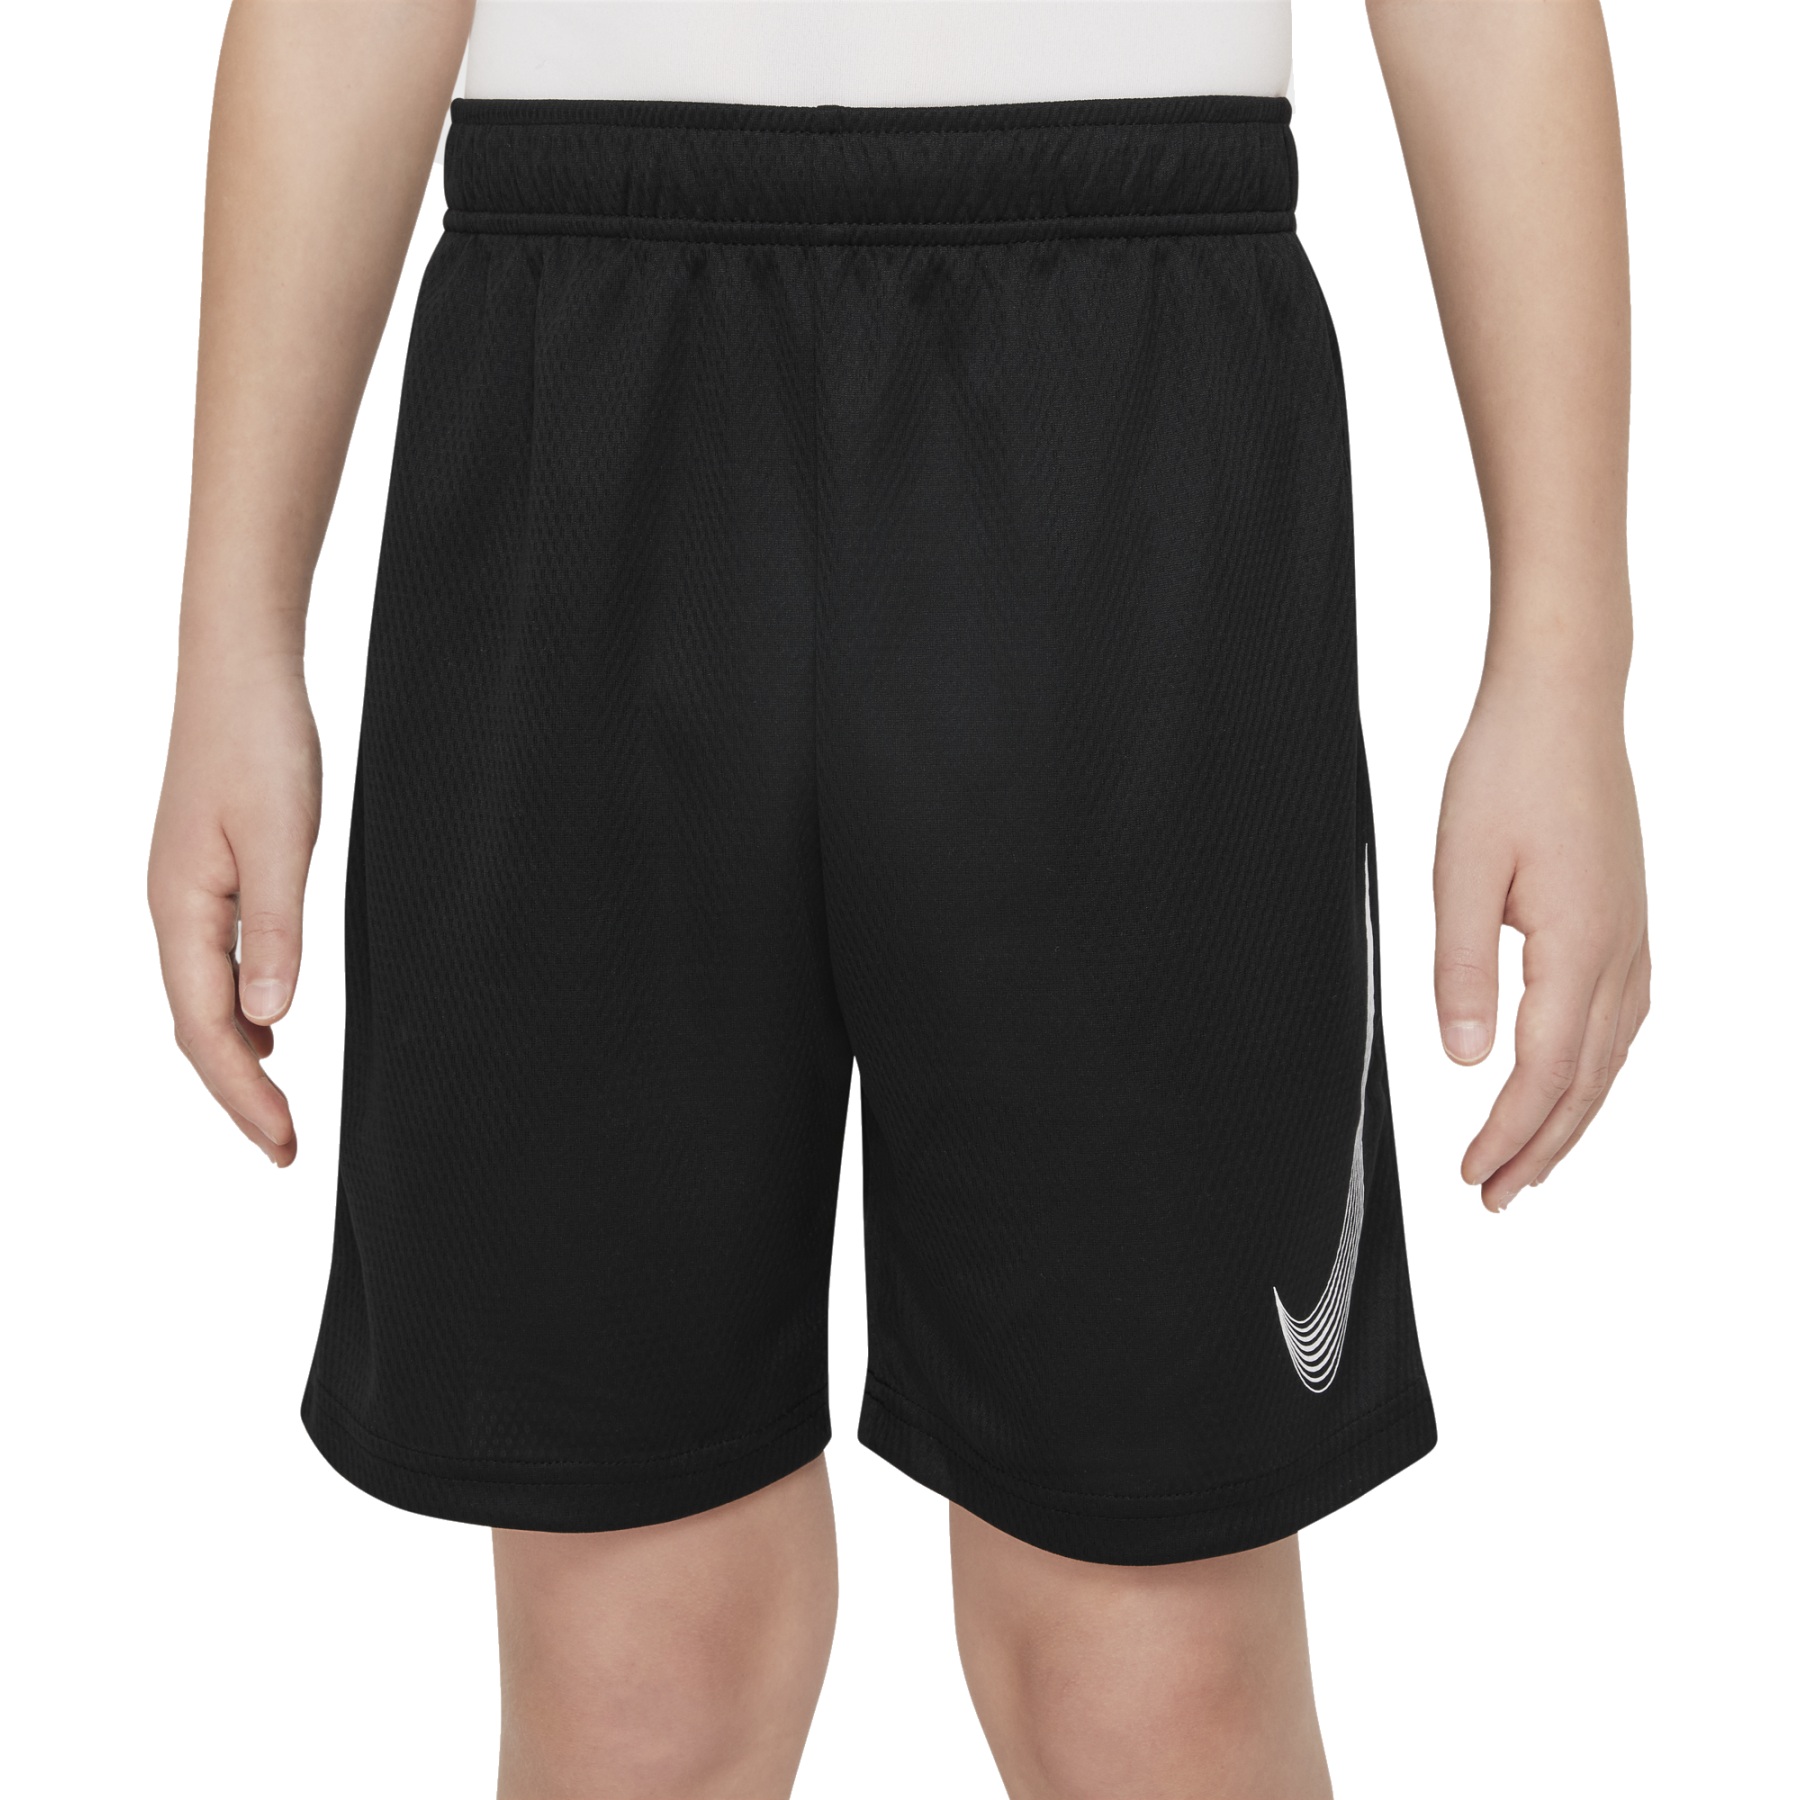 Immagine prodotto da Nike Pantaloncini Bambini - Dri-FIT - nero/bianco DM8537-010